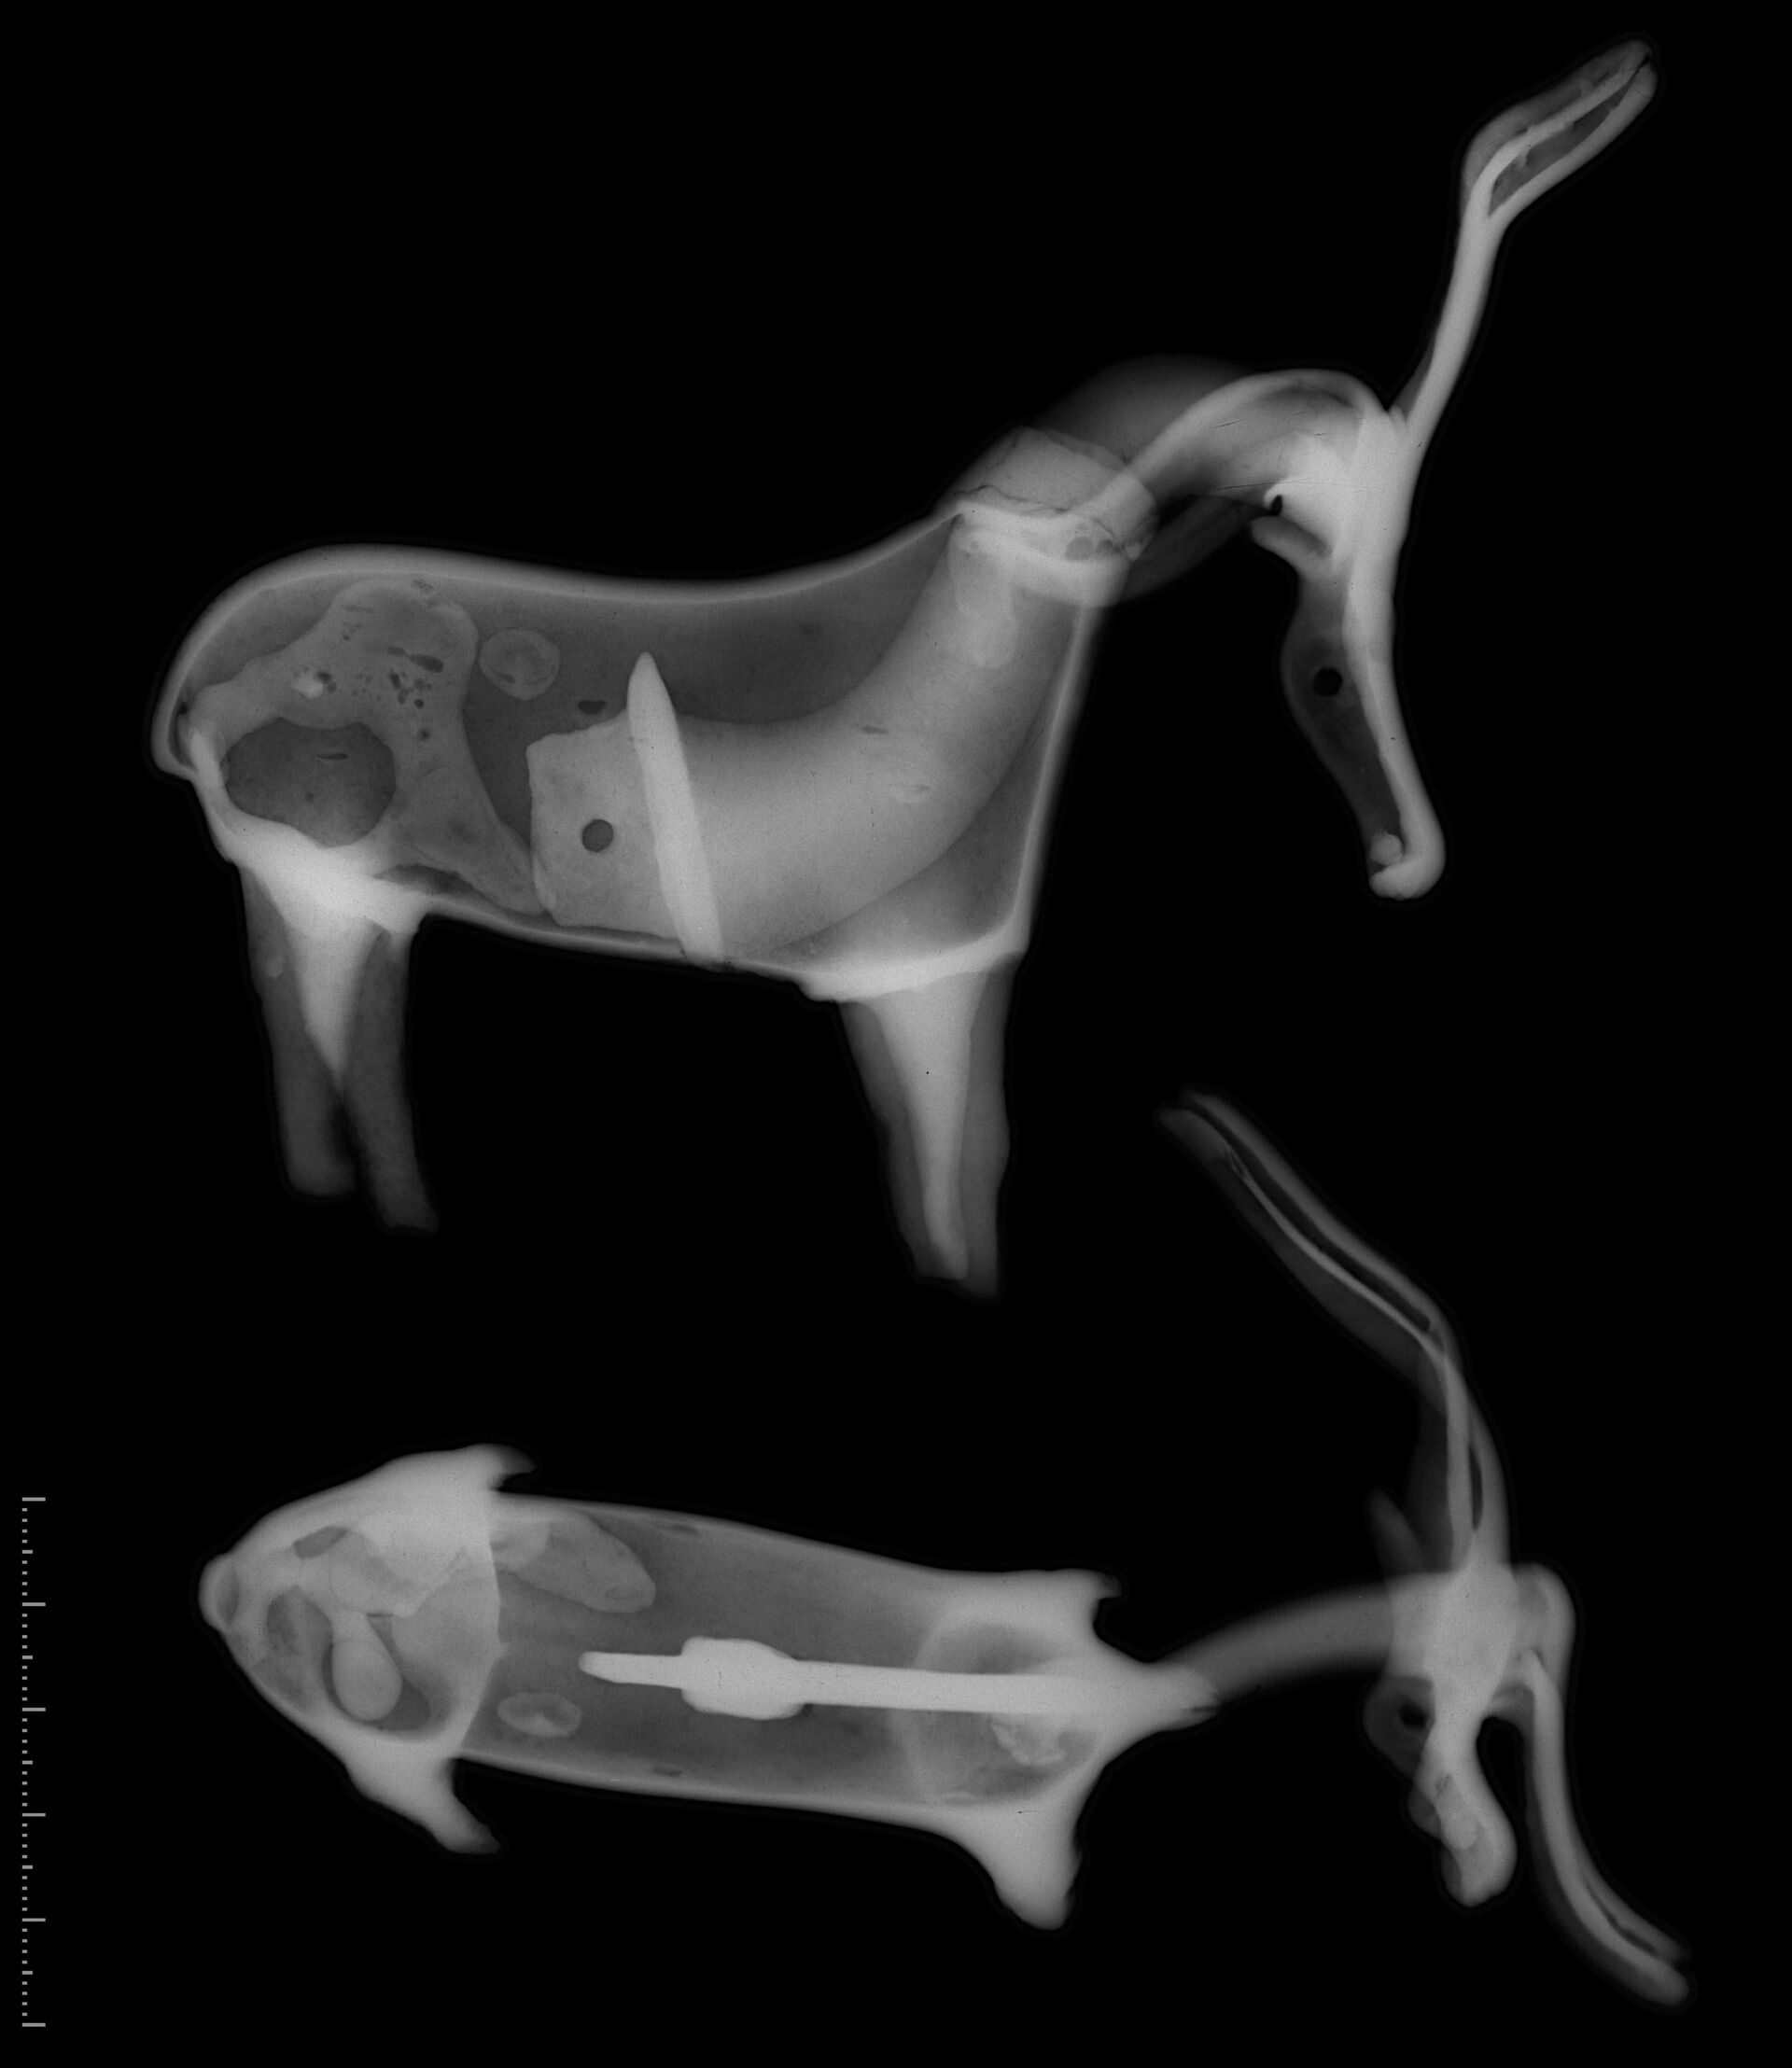 Røntgenbilde av den ene dyrefiguren, som viser hvordan hodet er blitt støpt inn i kroppen.&amp;#160;Sokkelen med festemekanismen i enden av halsen er også synlig.